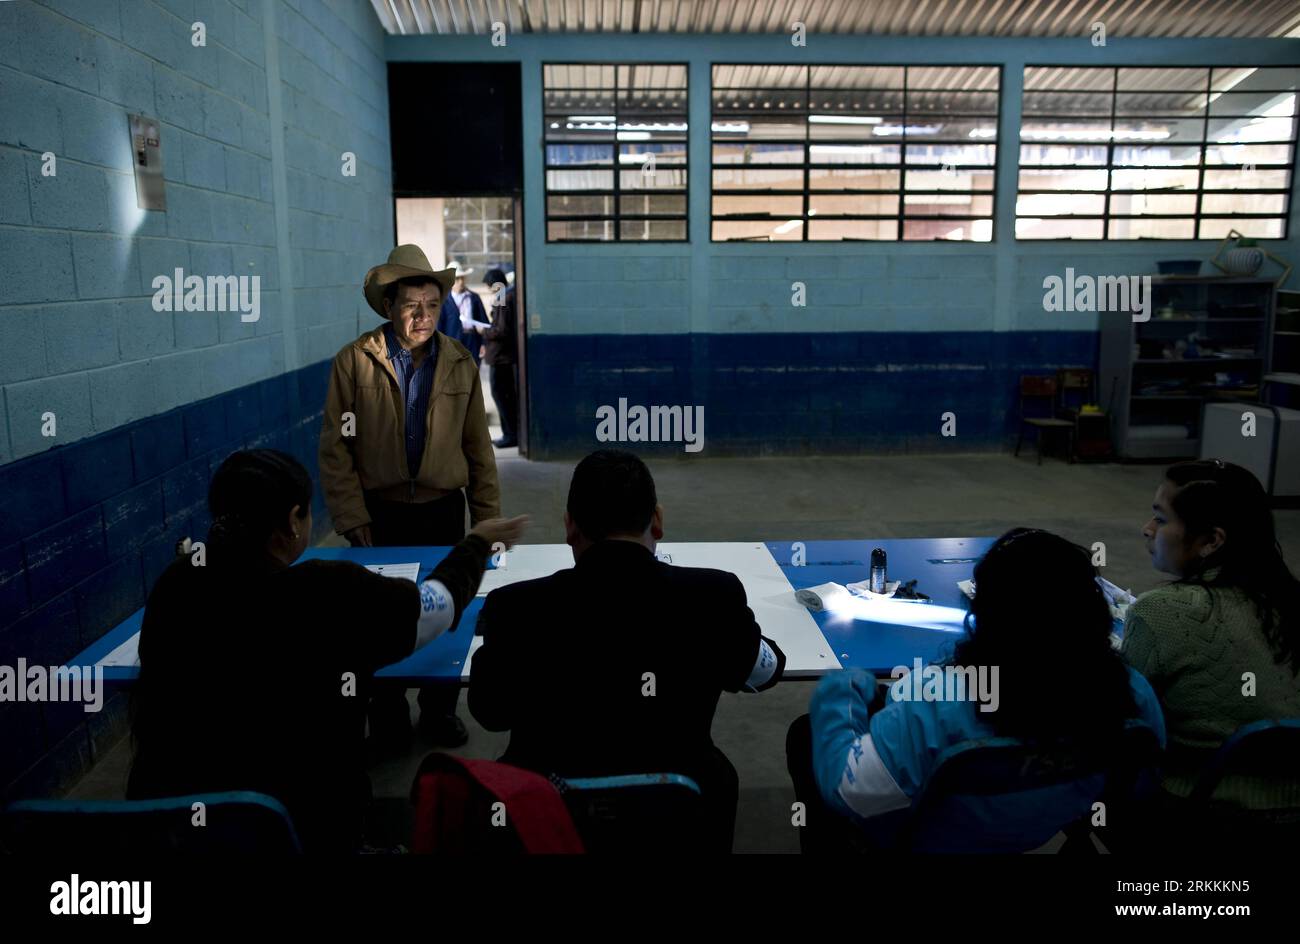 Bildnummer : 56254700 Datum : 06.11.2011 Copyright : imago/Xinhua (111107) -- SAN JUAN COMALAPA, 7 novembre 2011 (Xinhua) -- un homme va voter dans un bureau de vote de la province de San Juan Comalapa, au Guatemala, le 6 novembre 2011. Les Guatémaltèques ont commencé à se rendre dans les bureaux de vote dimanche matin pour voter au second tour présidentiel de leur pays. Plus de 2 500 bureaux de vote à travers le pays d'Amérique centrale ont ouvert leurs portes à 7 heures (1300 heures GMT) pour l'élection, suite au premier tour de septembre. (Xinhua/Guillermo Arias) (PY) (srb) GUATEMALA-SAN JUAN COMALAPA-PESIDENTIAL ELECTI Banque D'Images